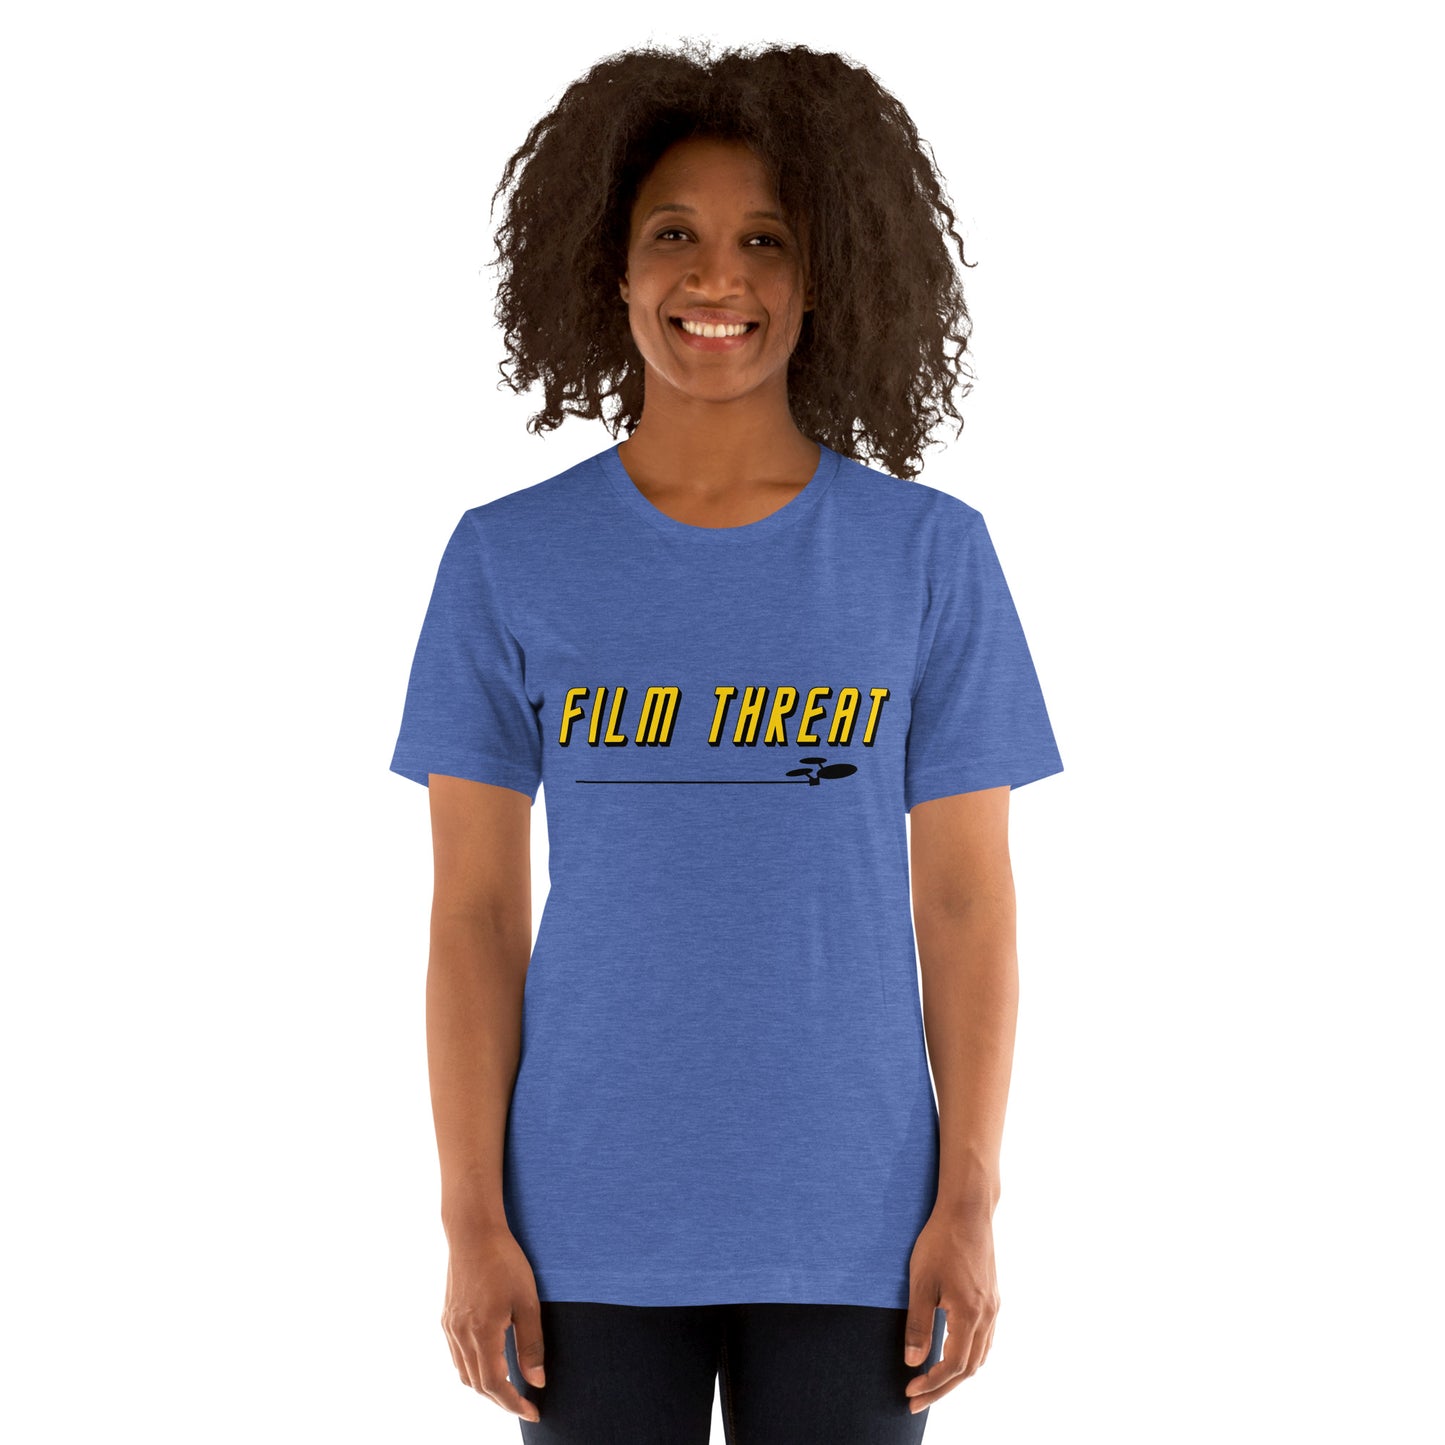 Film Trek Unisex t-Shirt